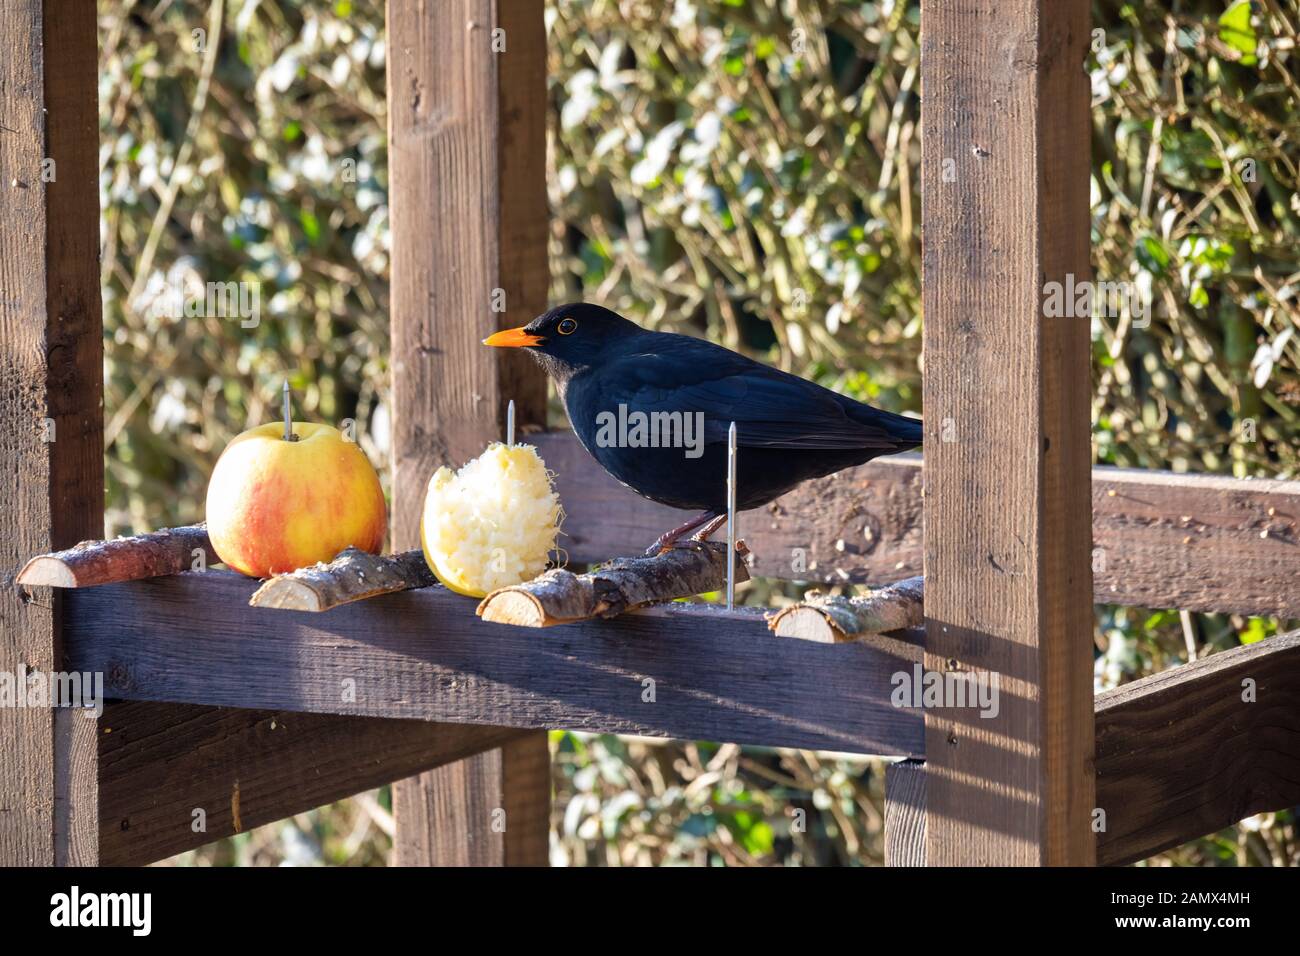 Maschio di blackbird comune, Turdus merula alimentazione in feeder di uccello di legno fatto in casa, birdhouse installato sul giardino d'inverno, nessuna neve Foto Stock